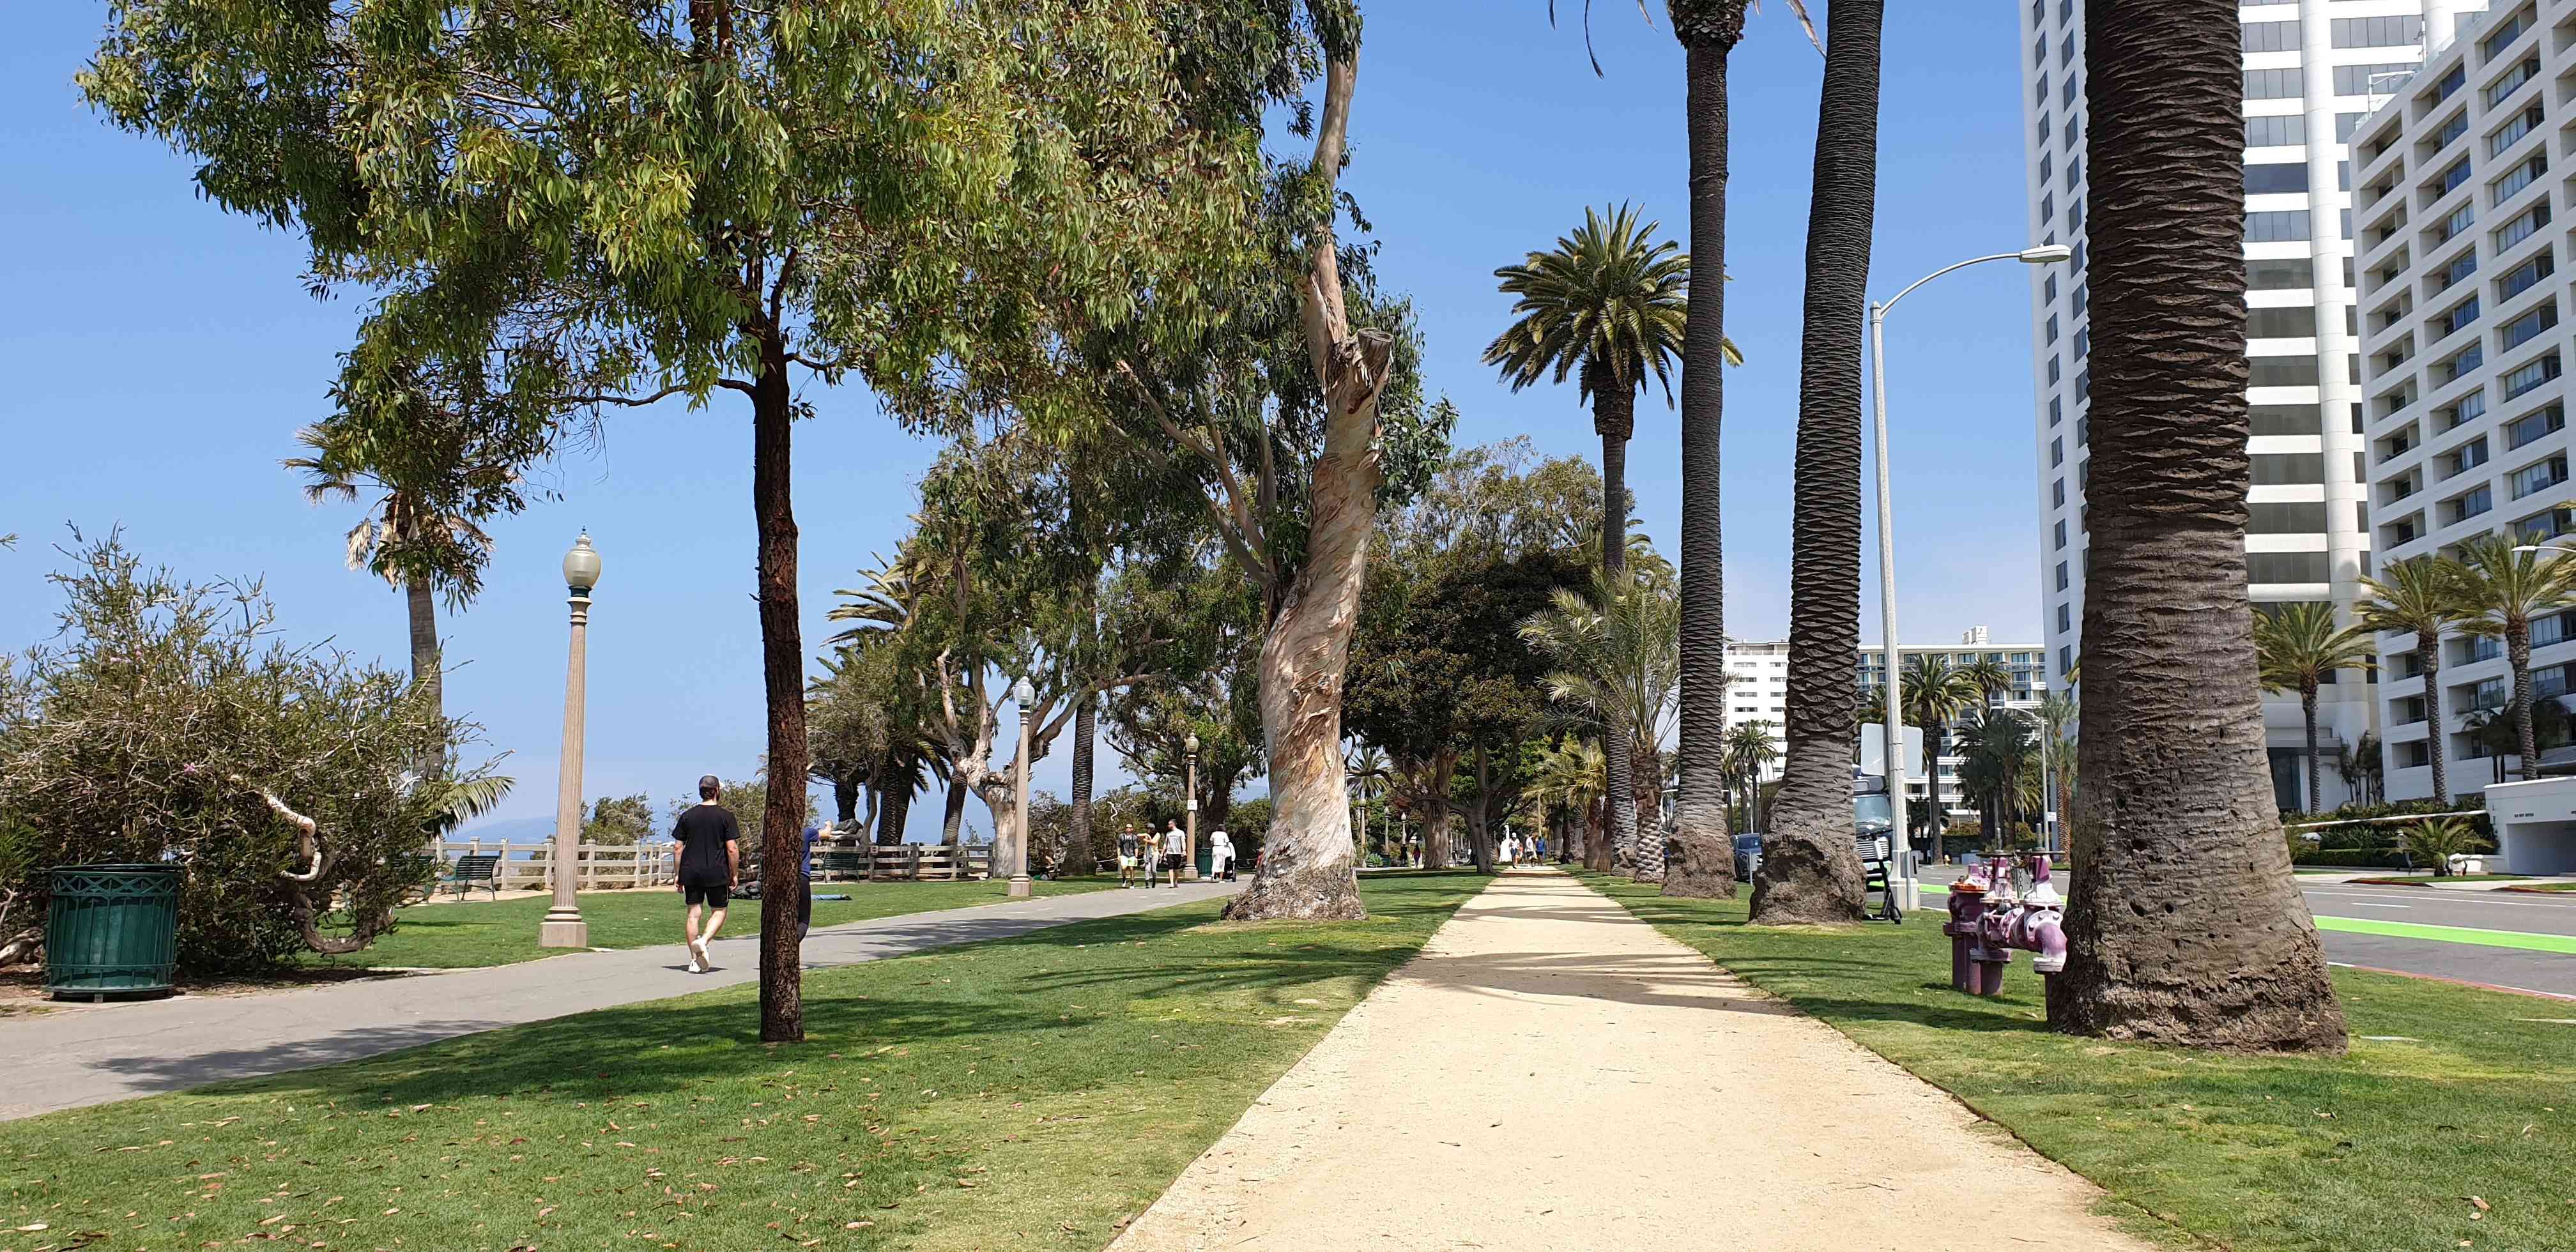 The ocean front park at Santa Monica LA